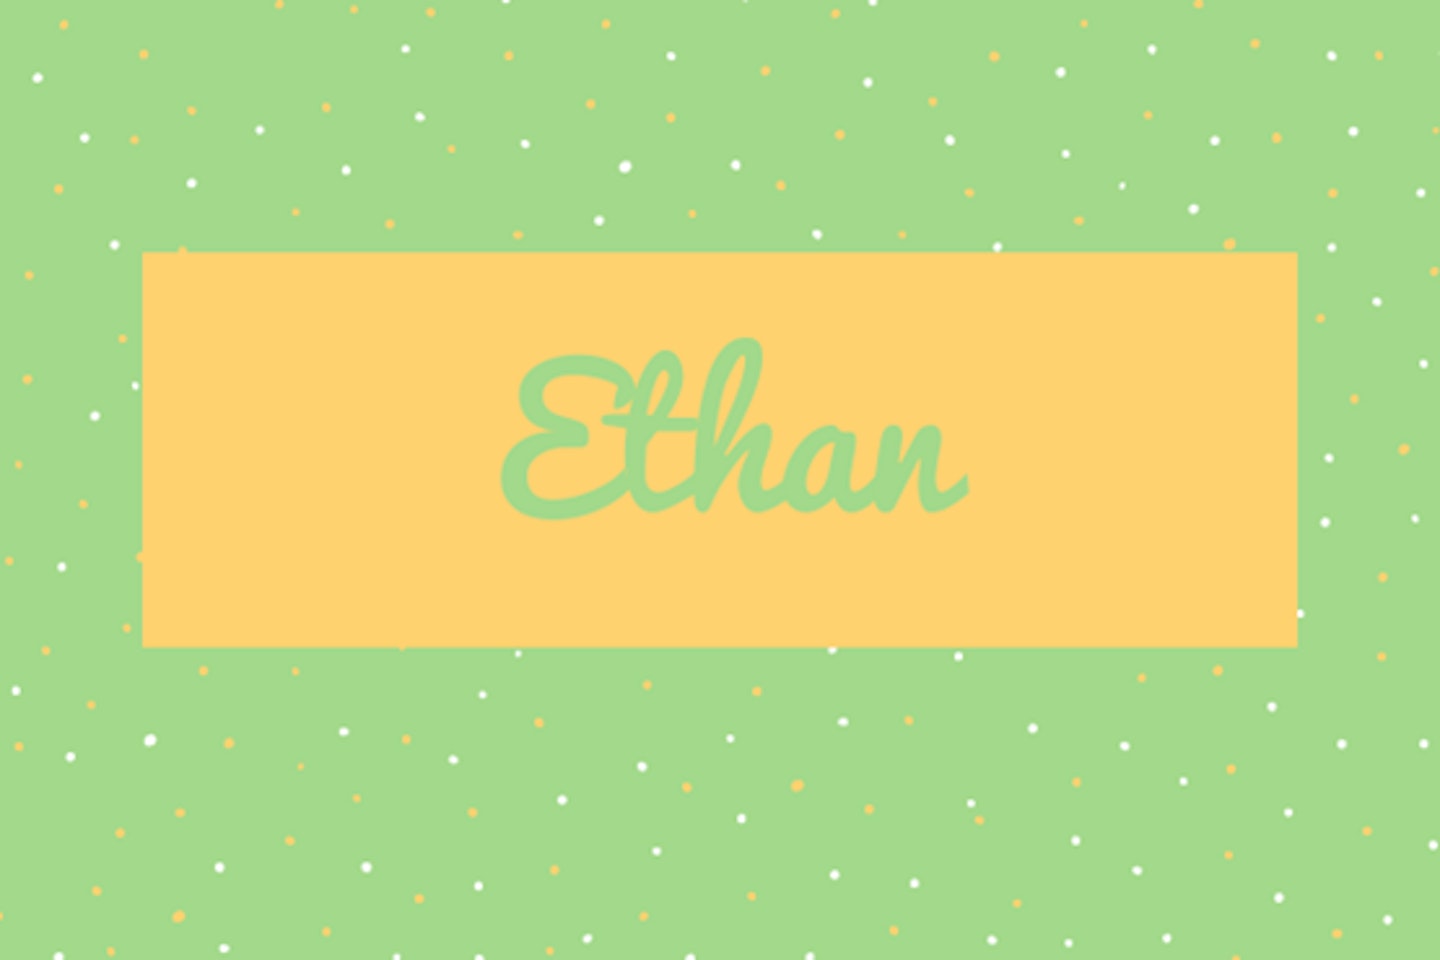 38) Ethan